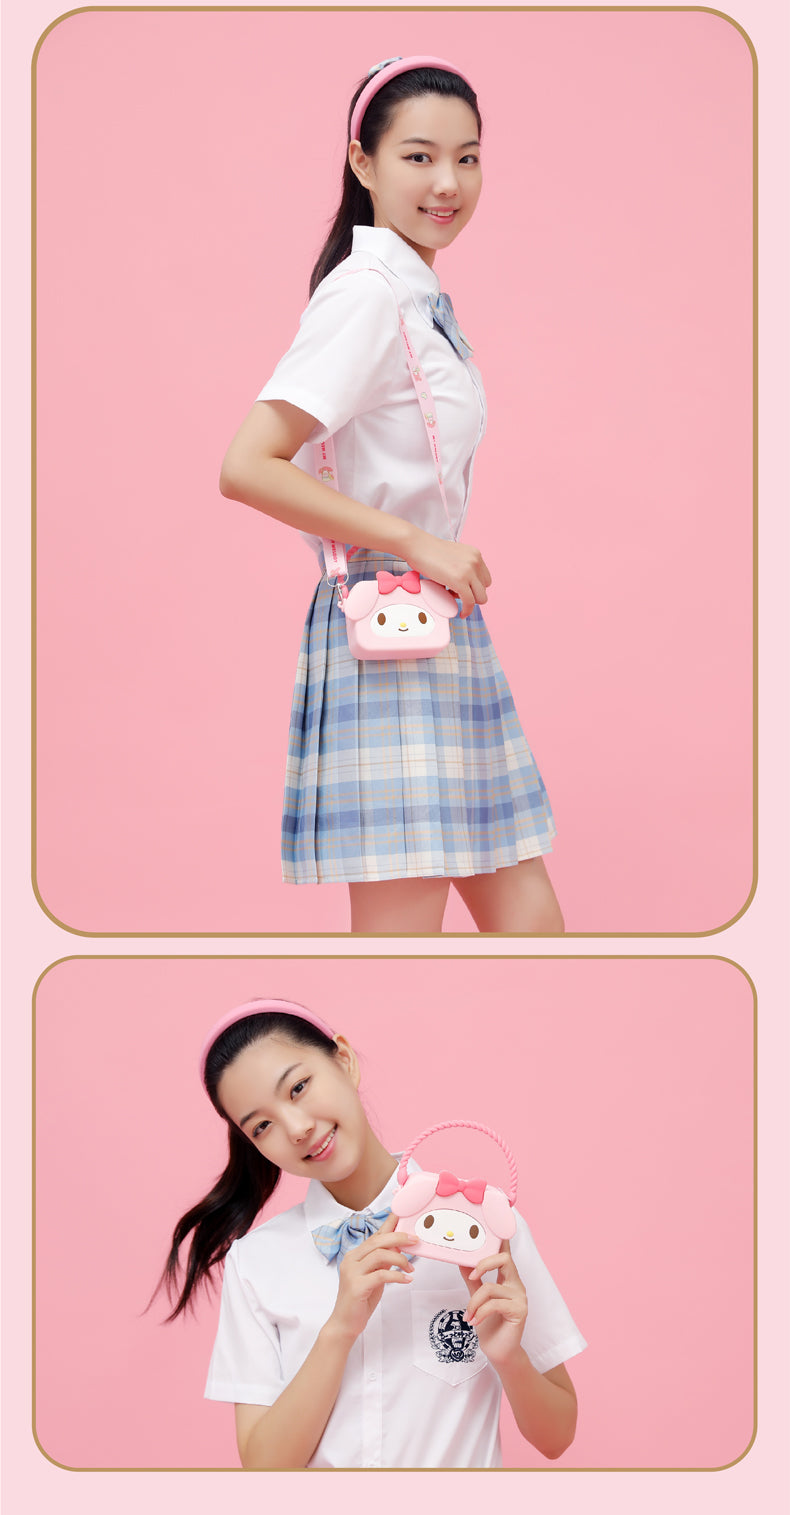 Hello Kitty & Sanrio Friends Messenger Bags - Q UNCLE x SANRIO